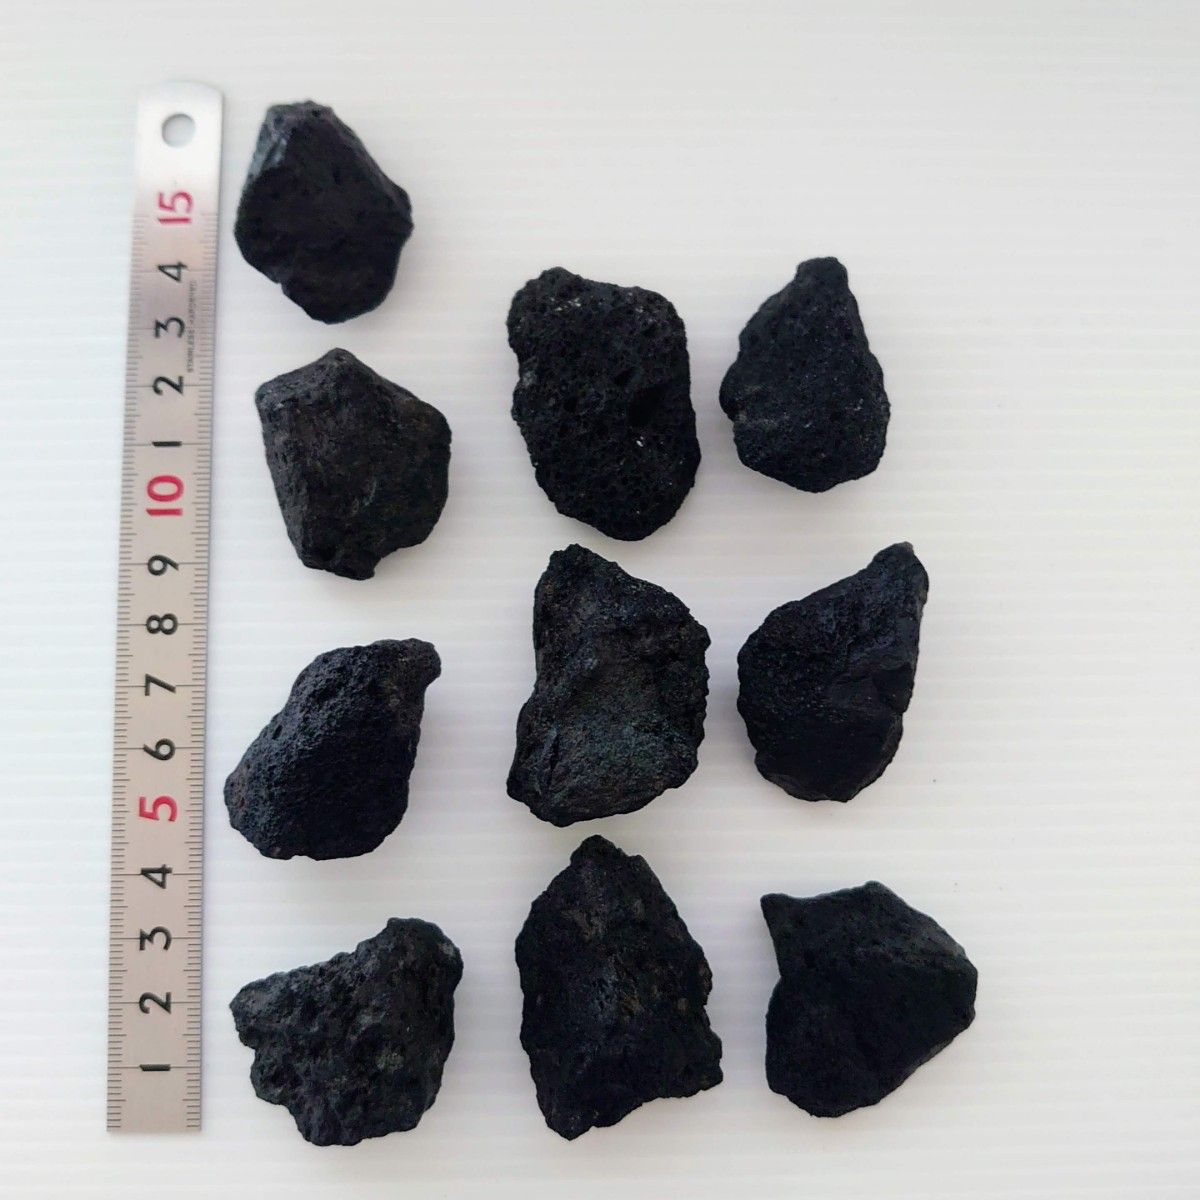 黒溶岩石 20個 【超超5超5大10】☆アクアリウム、テラリウム、苔リウムに最適